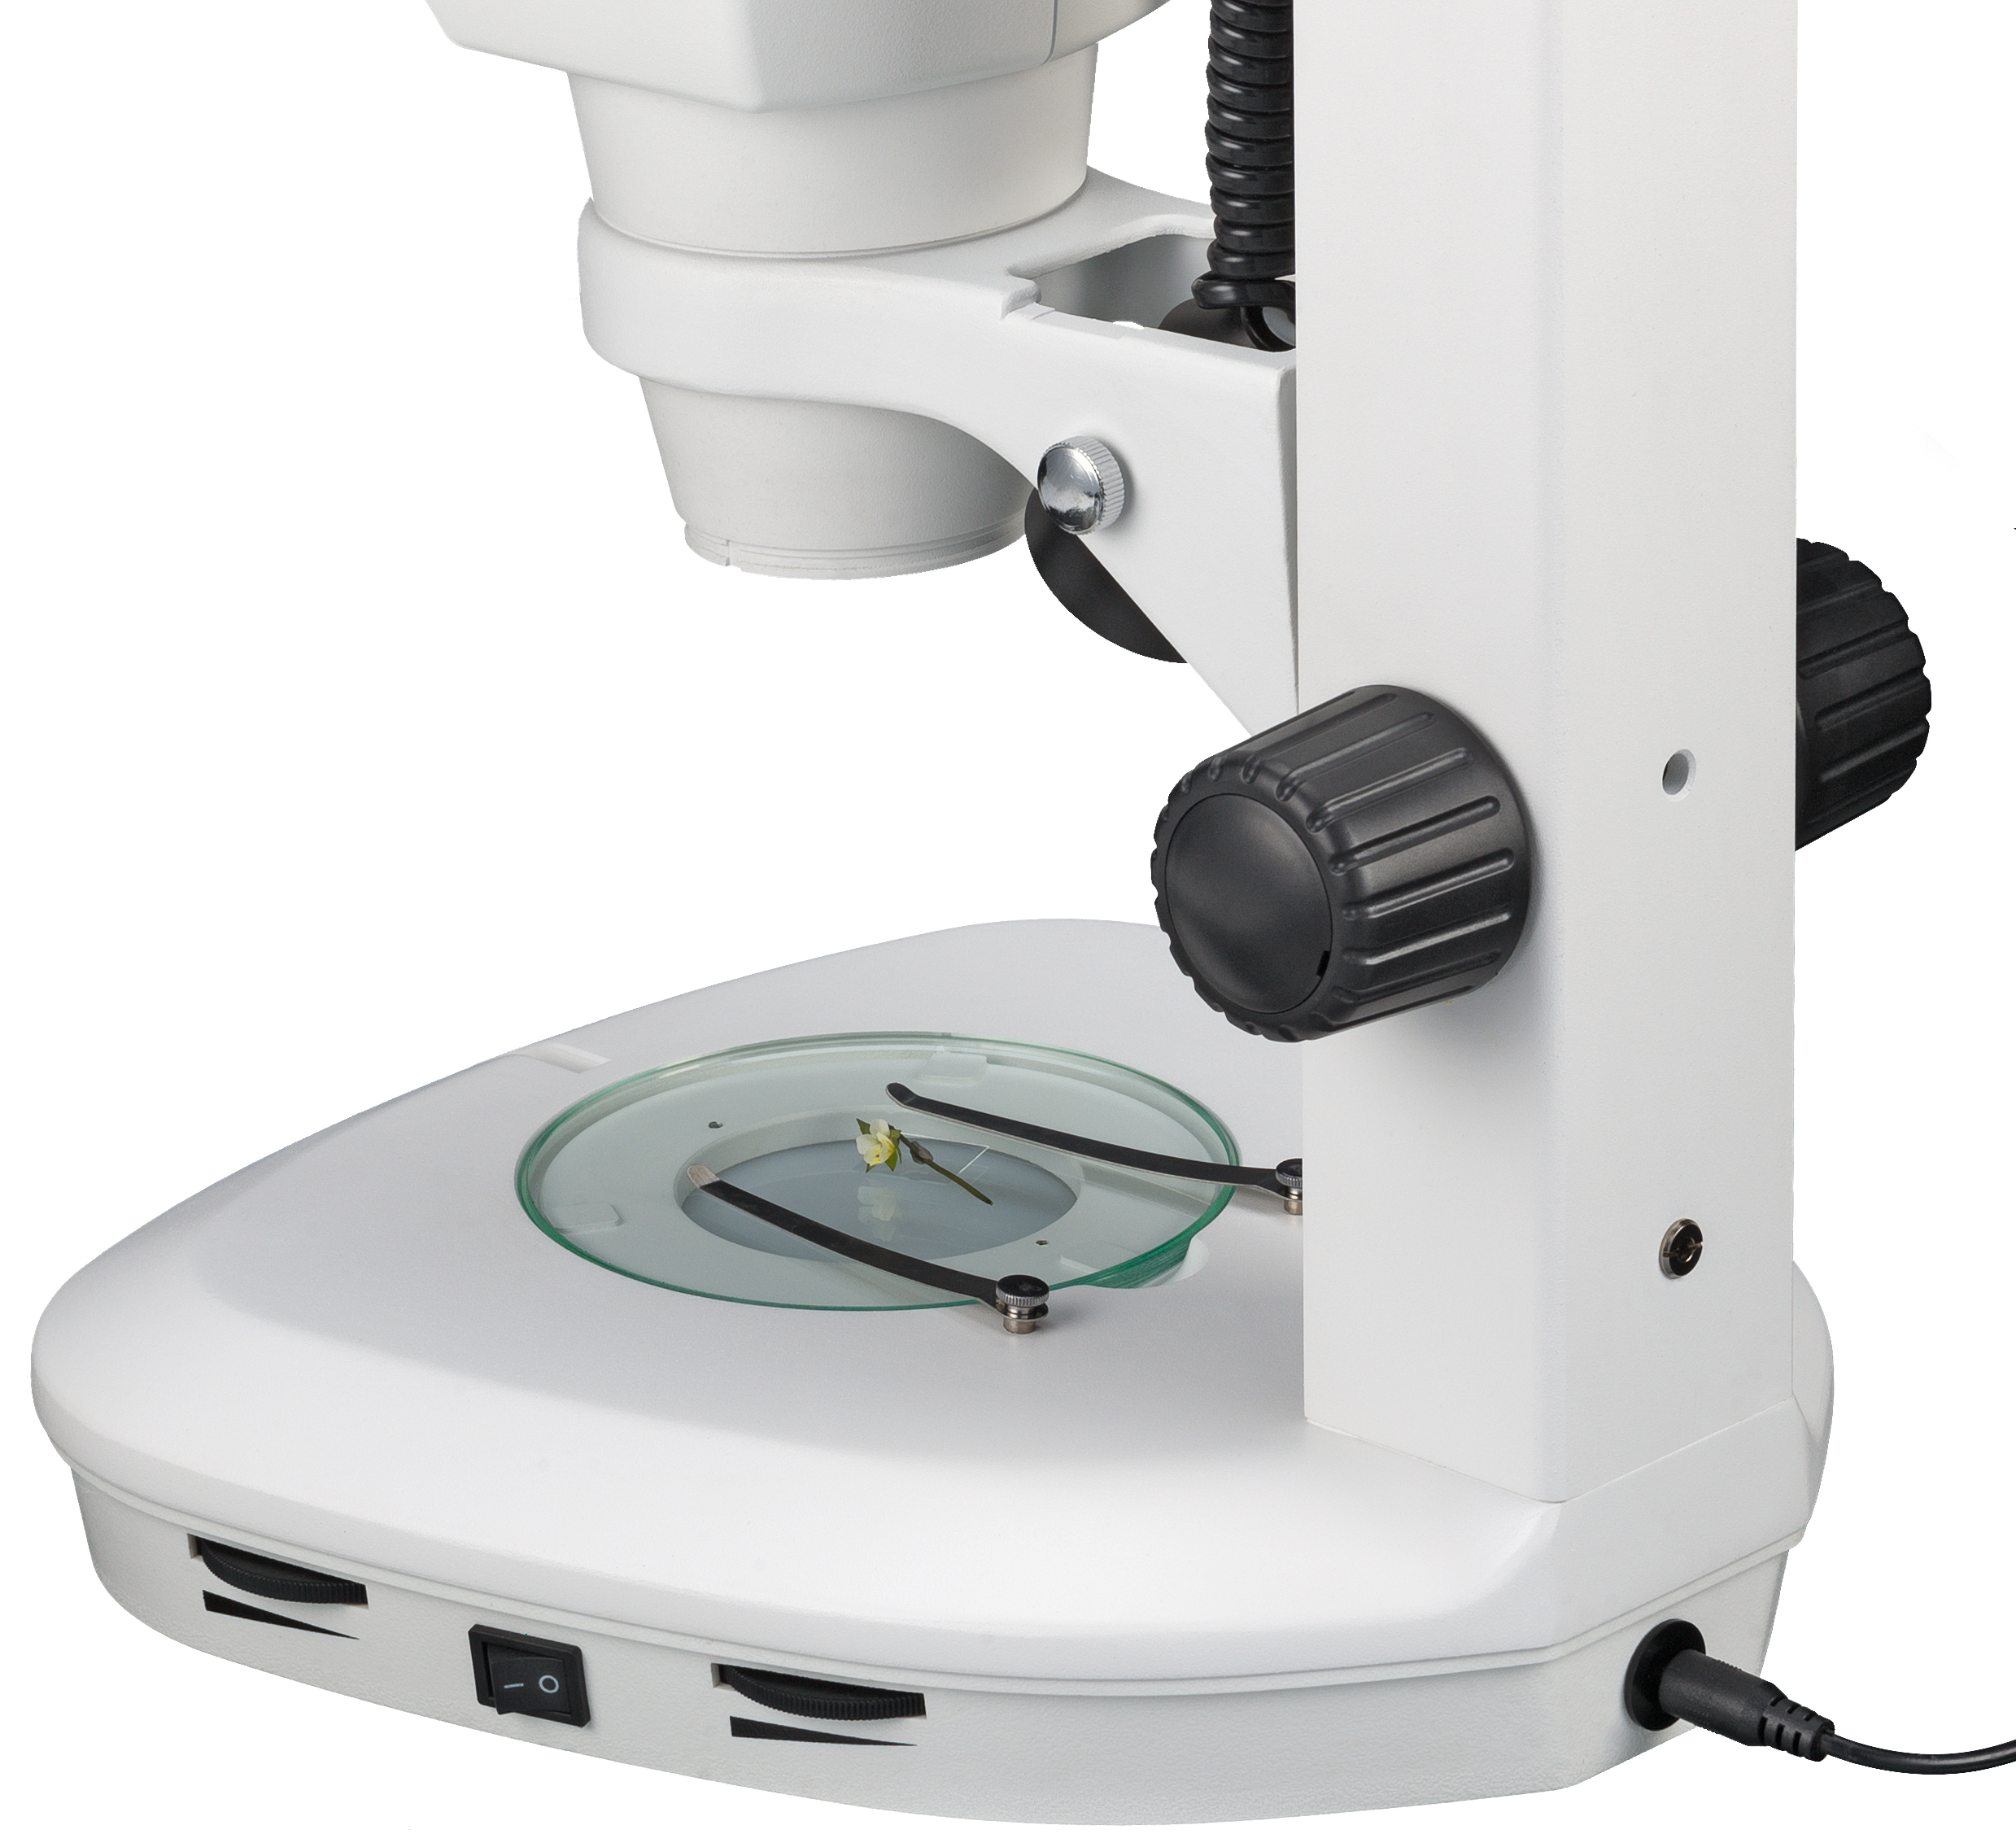 BRESSER Stereomicroscopio Science ETD-201 (30) Trino 